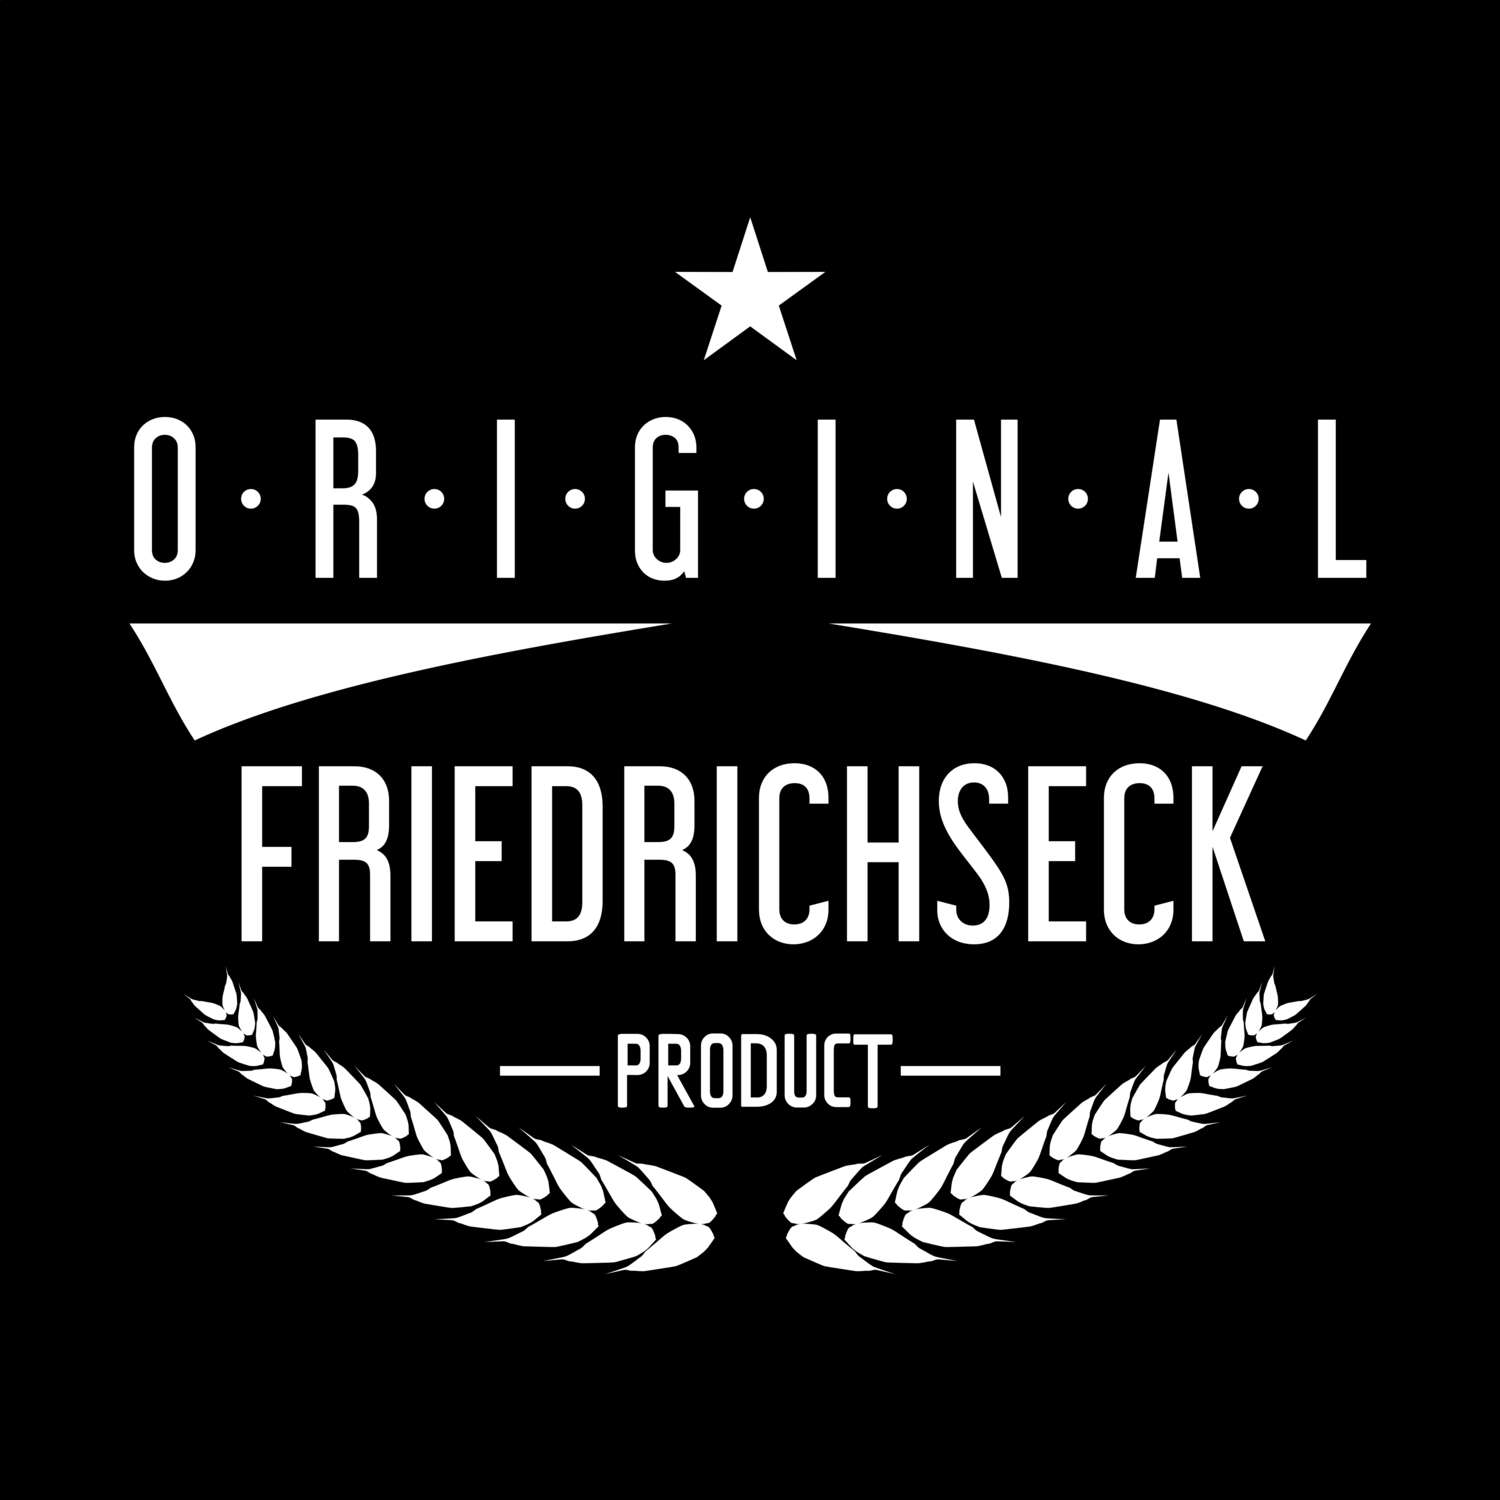 Friedrichseck T-Shirt »Original Product«